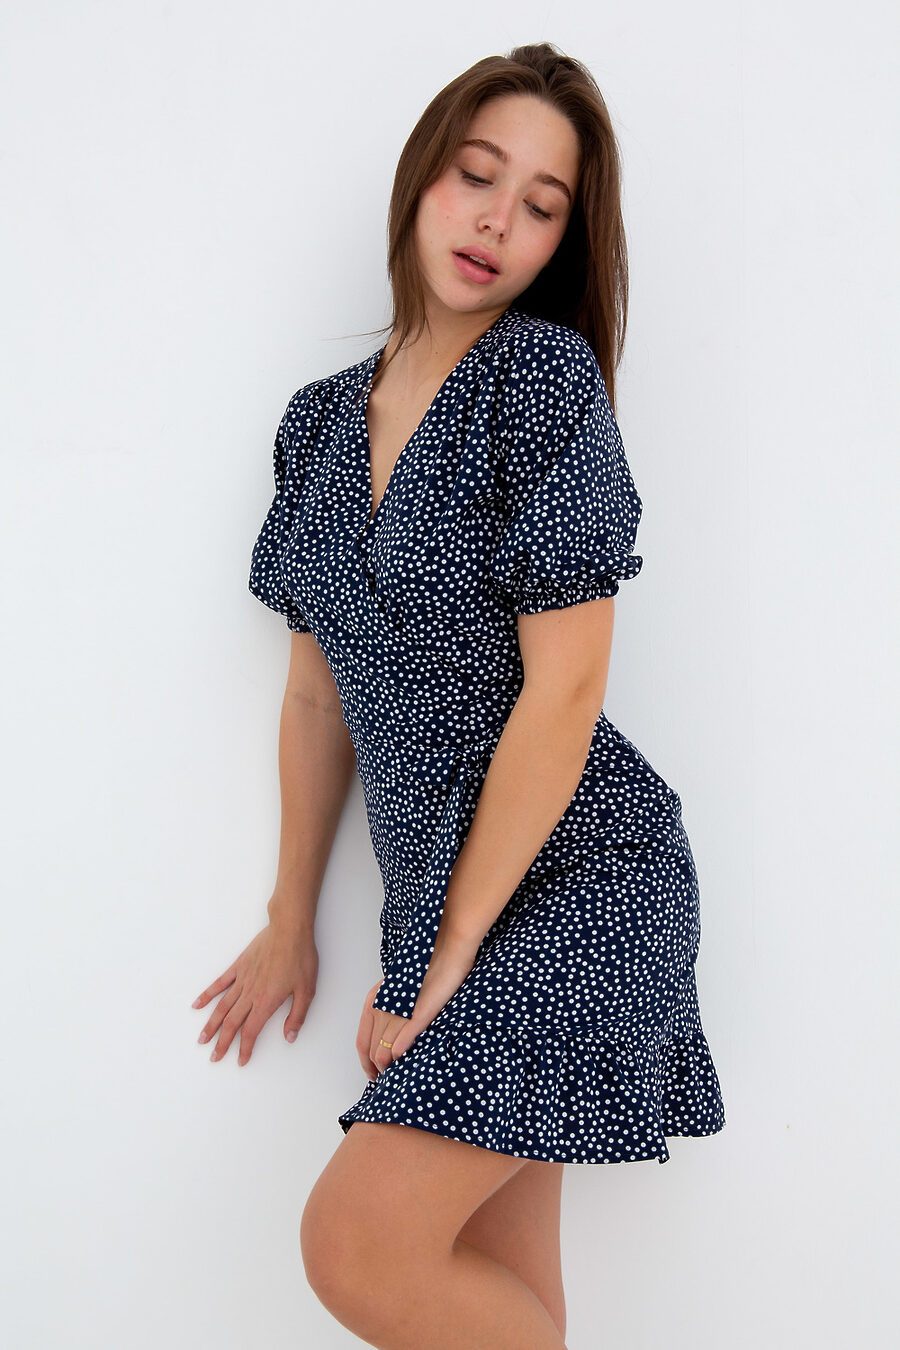 Платье П-20 для женщин НАТАЛИ 775900 купить оптом от производителя. Совместная покупка женской одежды в OptMoyo